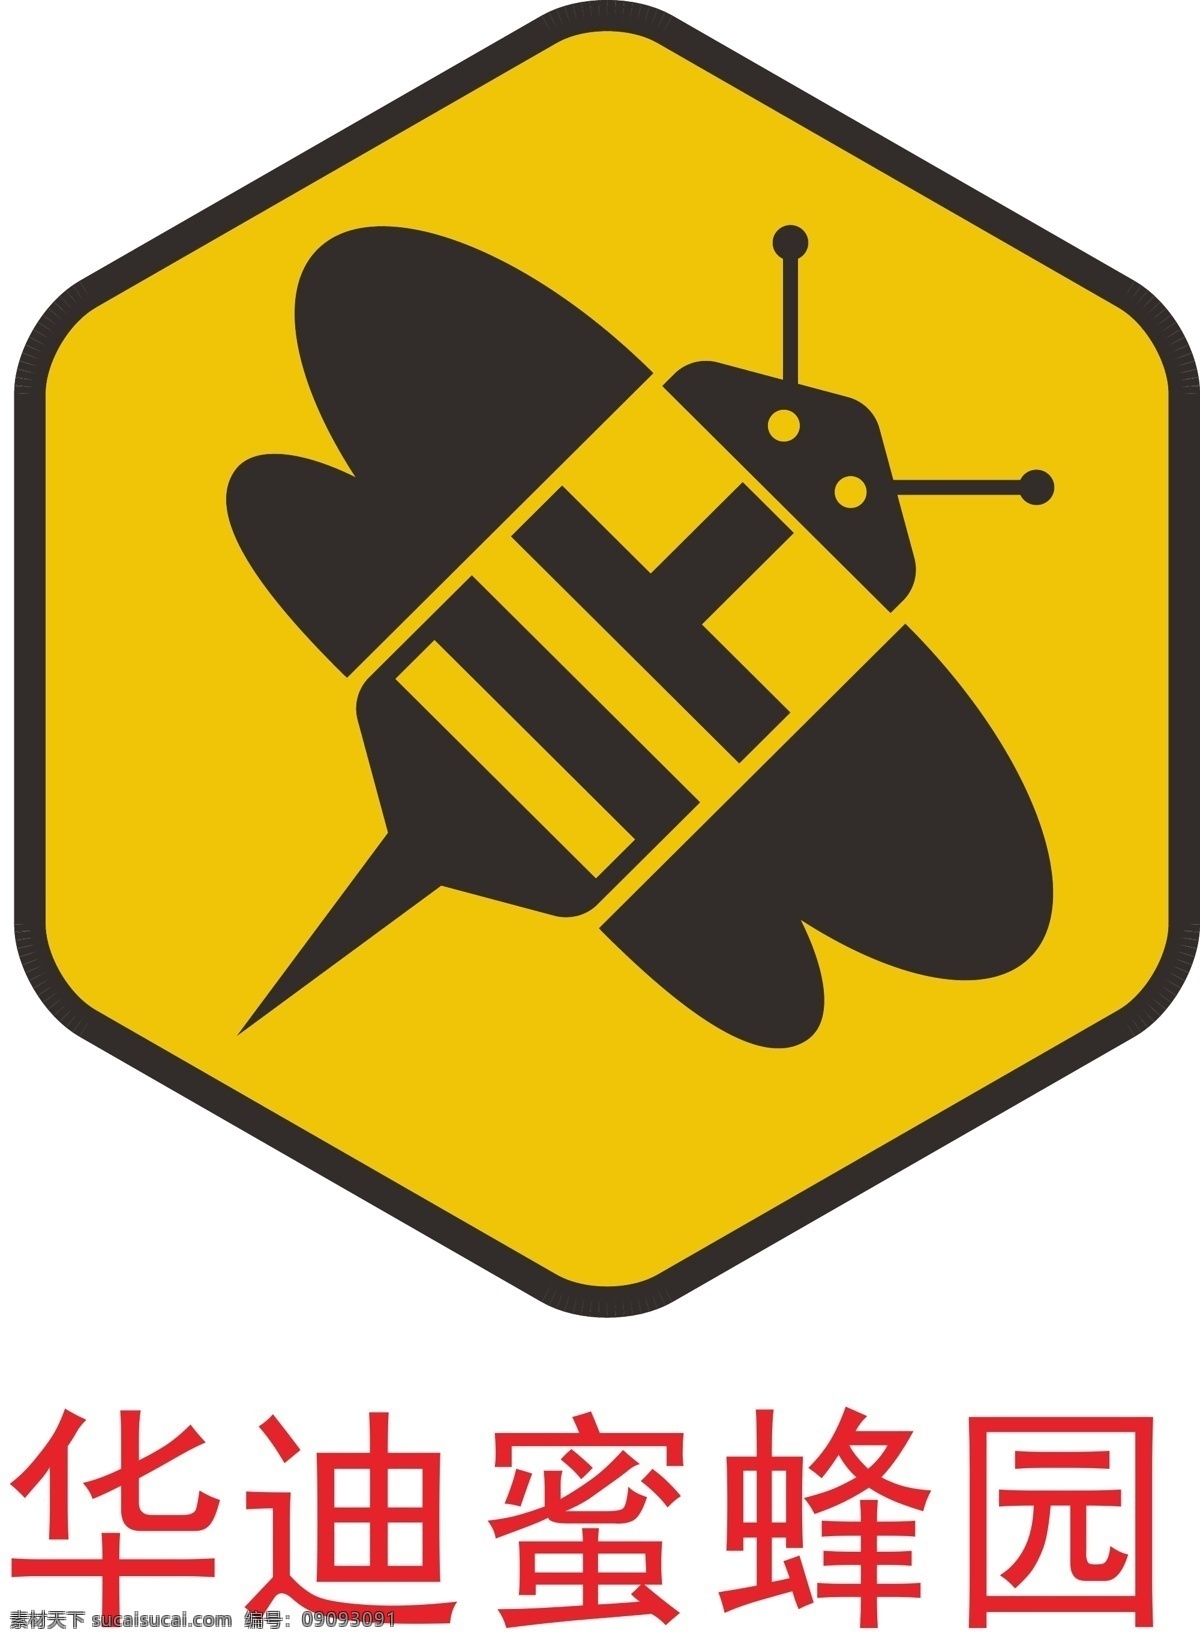 华 迪 蜜蜂 园 logo logo设计 标志设计 蜂蜜 华迪